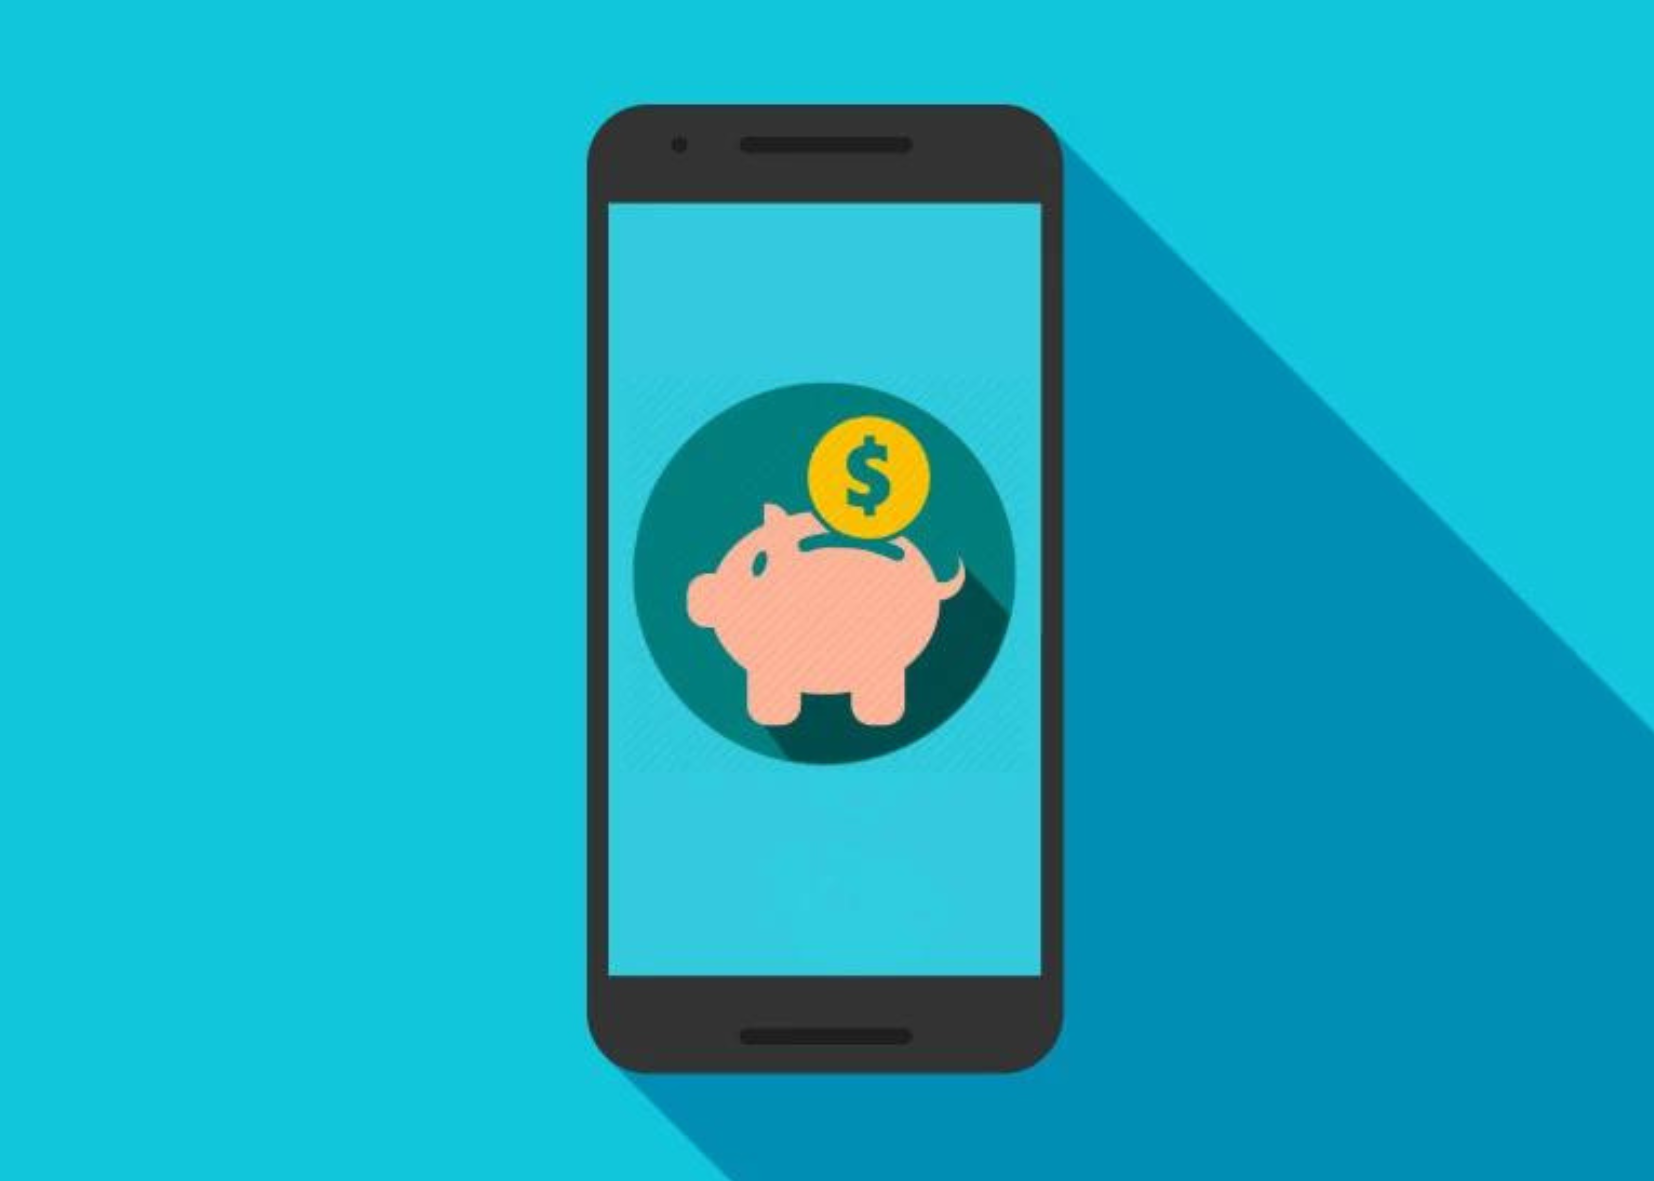 ¿Cómo hago para que el sueldo me alcance? Cinco apps gratis en Android y Apple que te ayudarán a mejorar tus finanzas